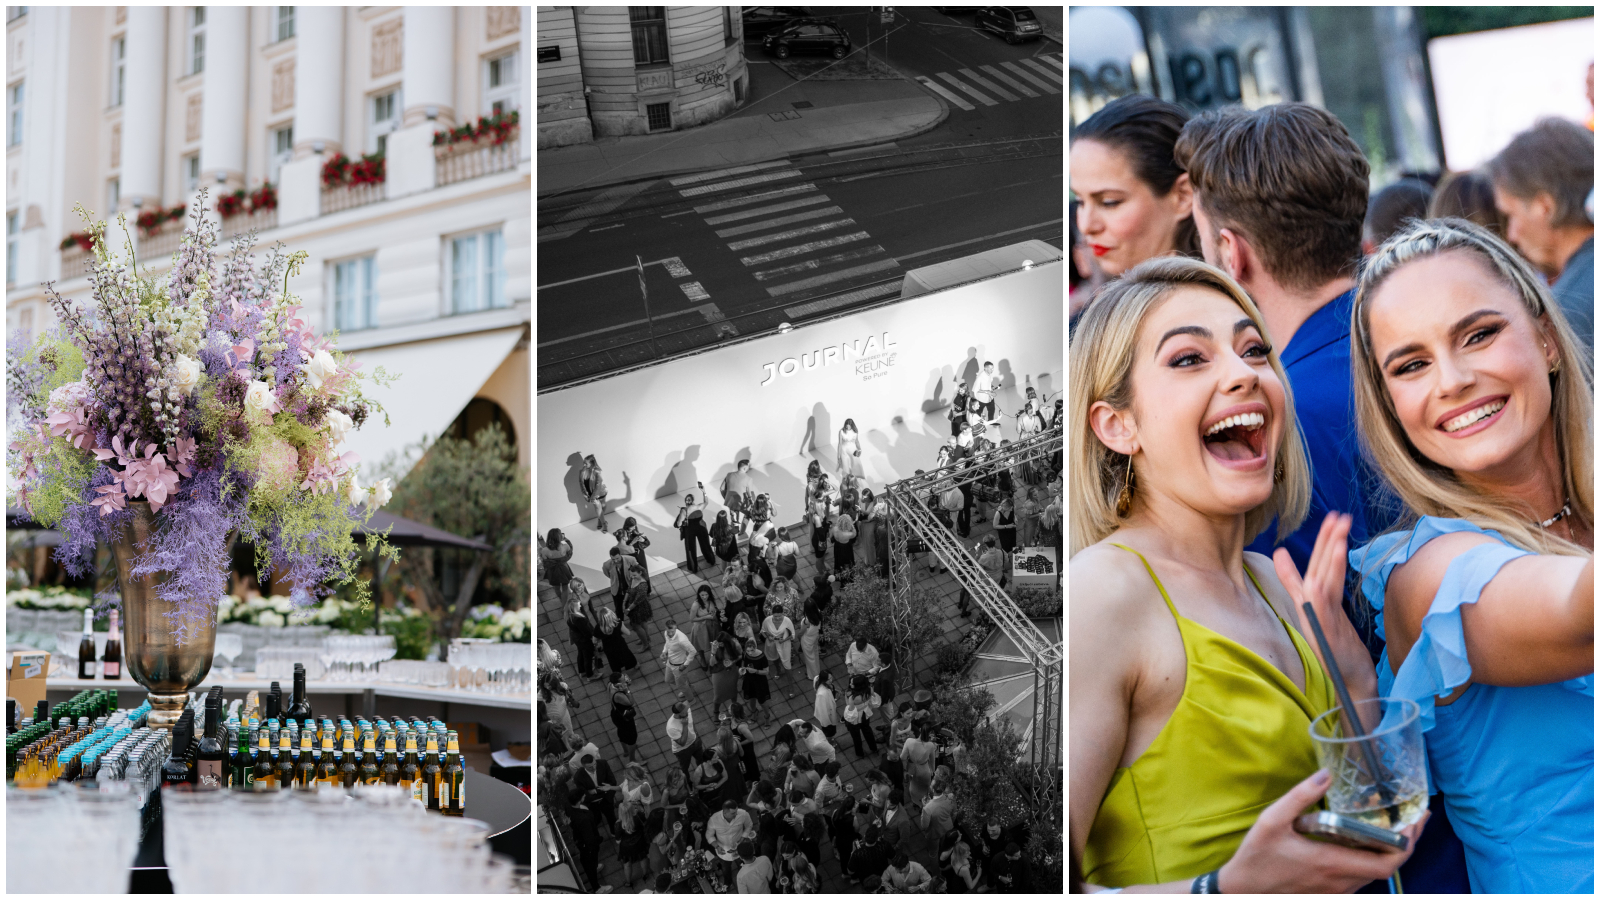 Pogledajte atmosferu na ovogodišnjem Journal Summer partyju na najljepšoj terasi u Zagrebu